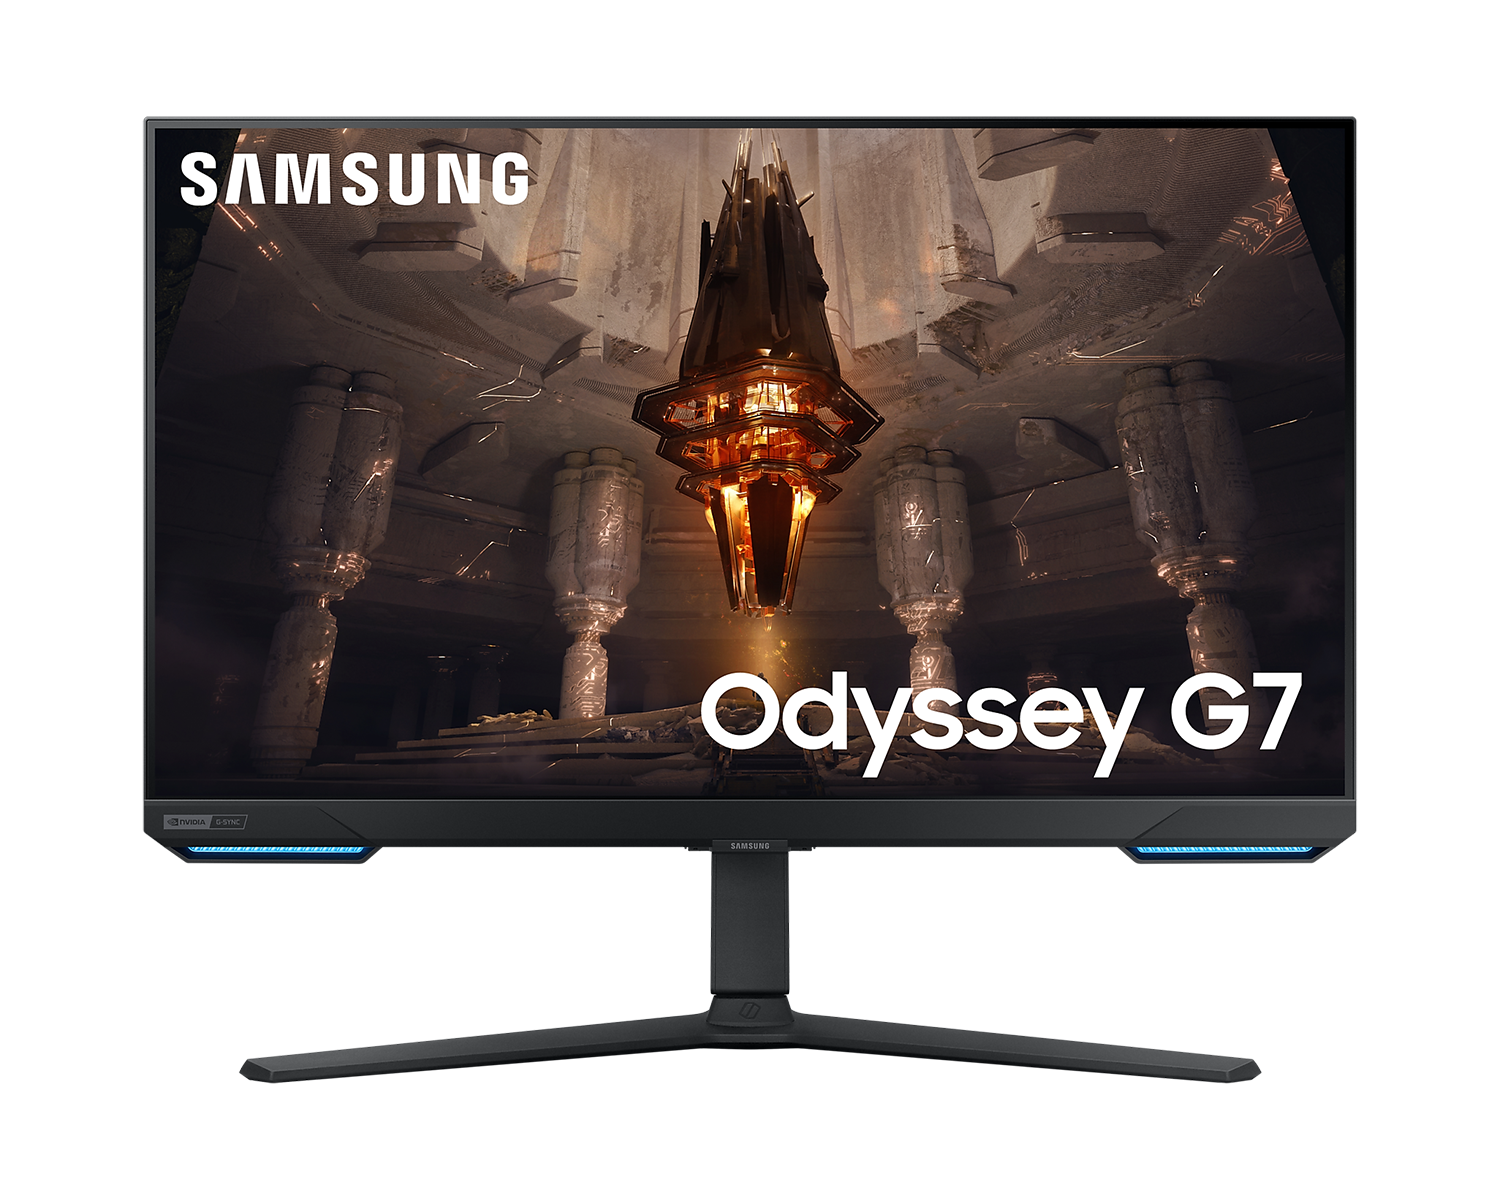 Монитор Samsung Odyssey G7 G70B 32 inch, IPS UHD 3840x2160, 144Hz, 1 ms, HDR 400, G-Sync Compatible, DisplayPort, HDMI, Черен